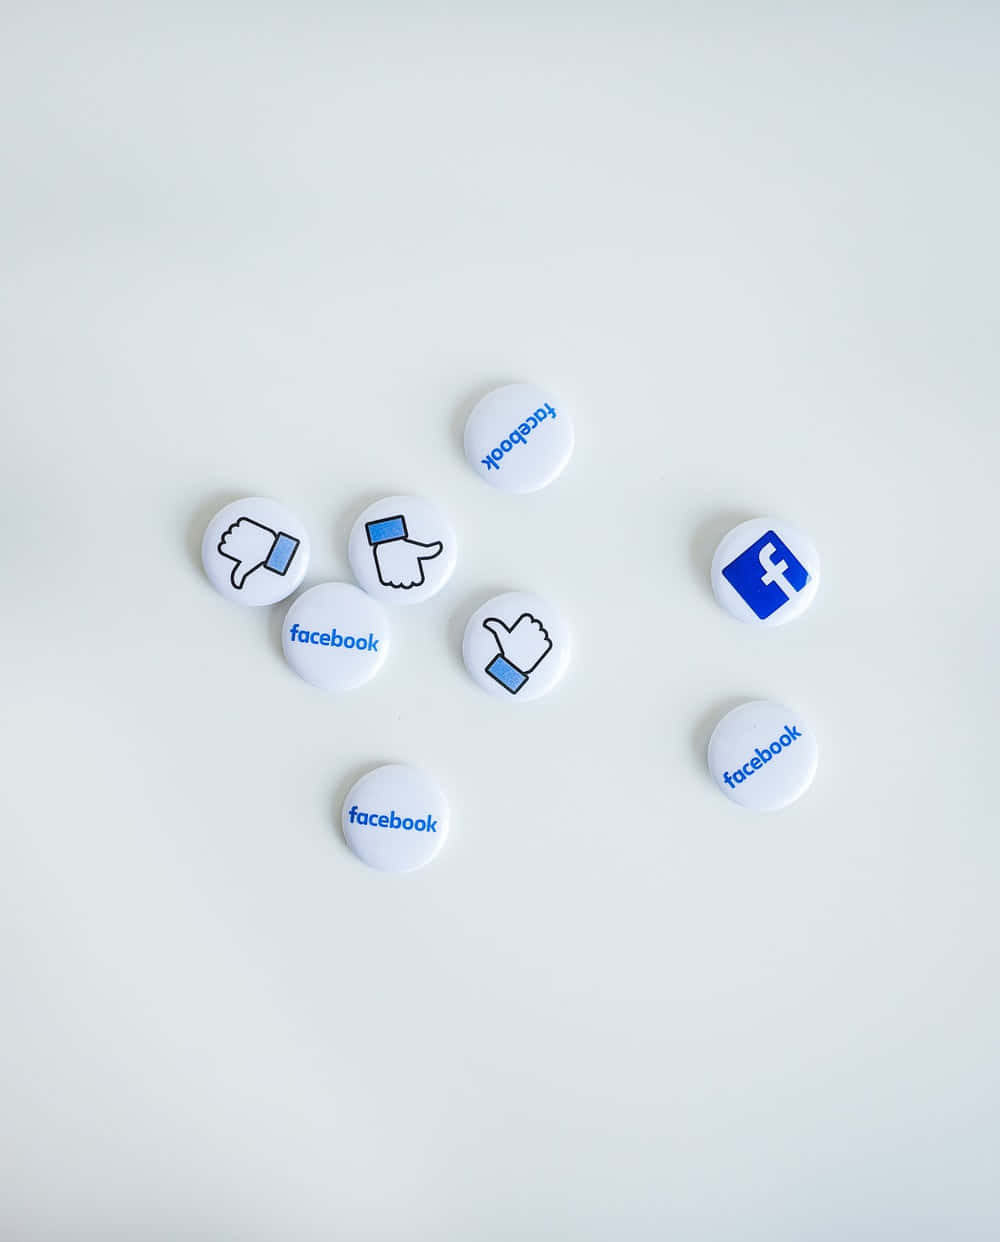 Facebookknöpfe Für Social Media-apps Wallpaper